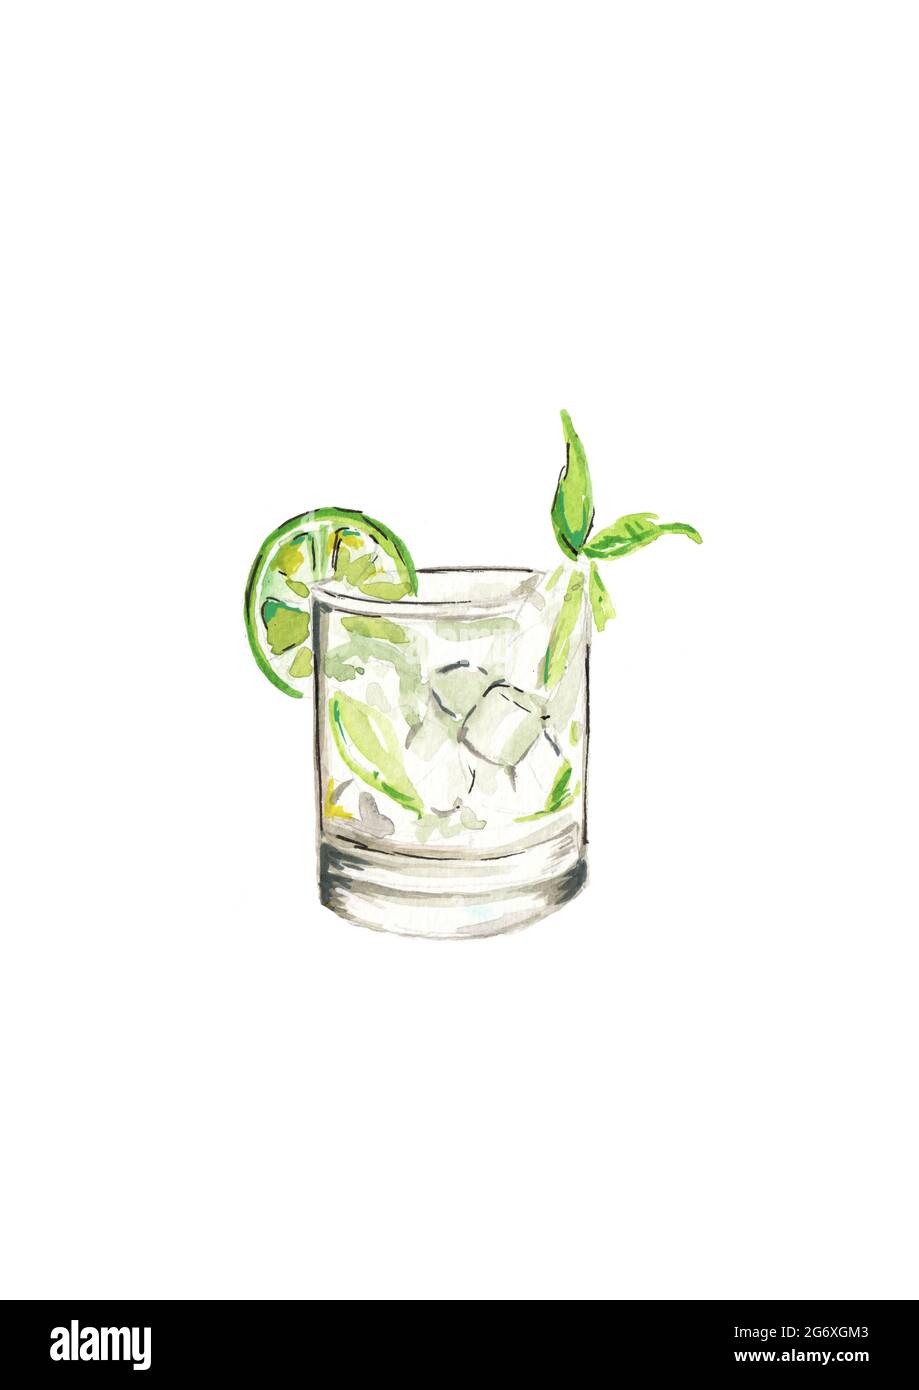 Mano - dipinto acquerello illustrazione di un Gin e tonico o mojito, con ghiaccio, menta e lime su uno sfondo bianco Foto Stock